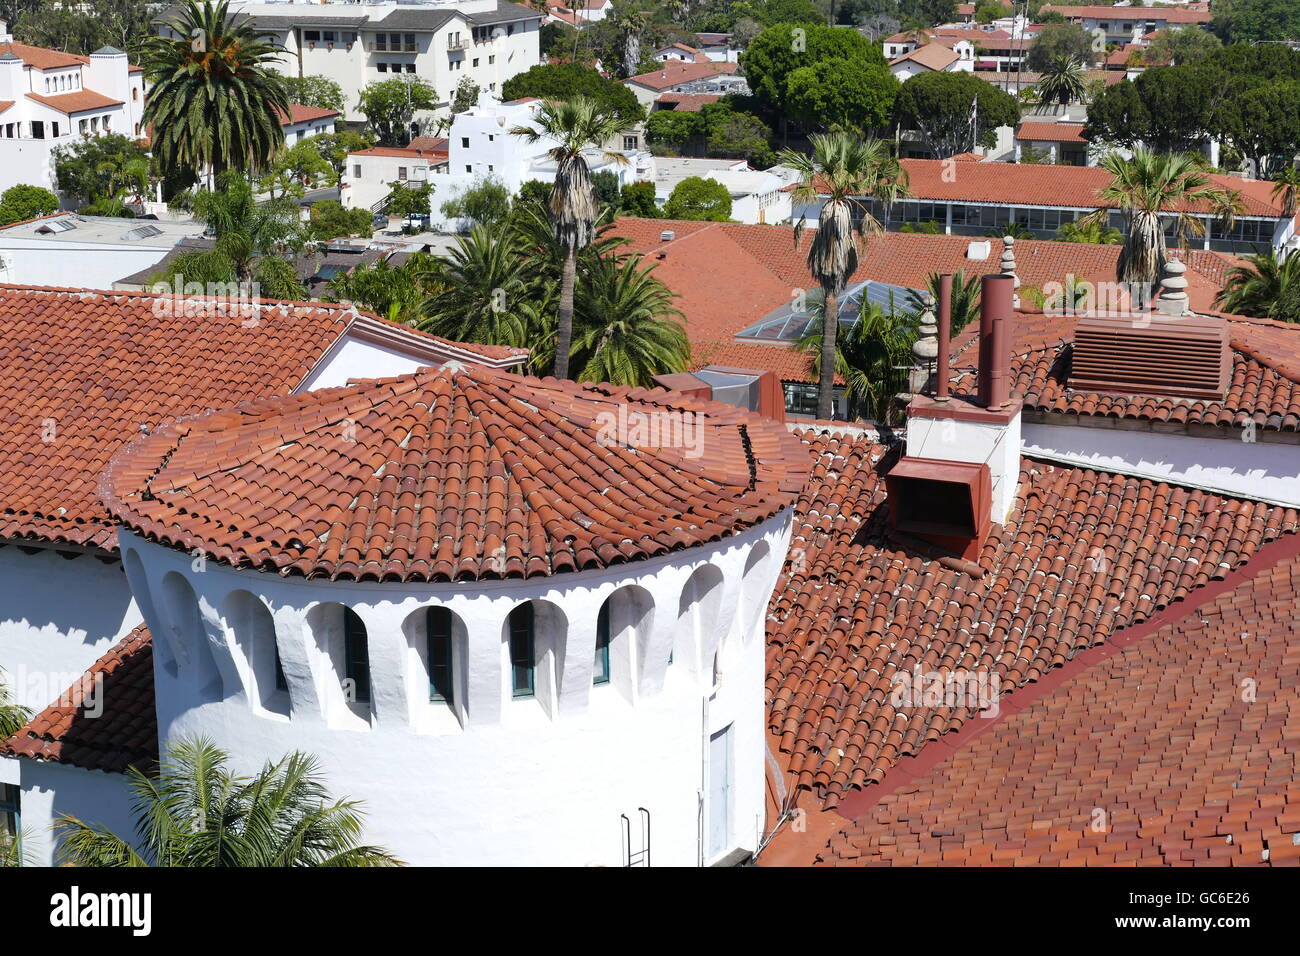 Aerial Landschaften gesehen von Santa Barbara County Courthouse, Kalifornien Stockfoto